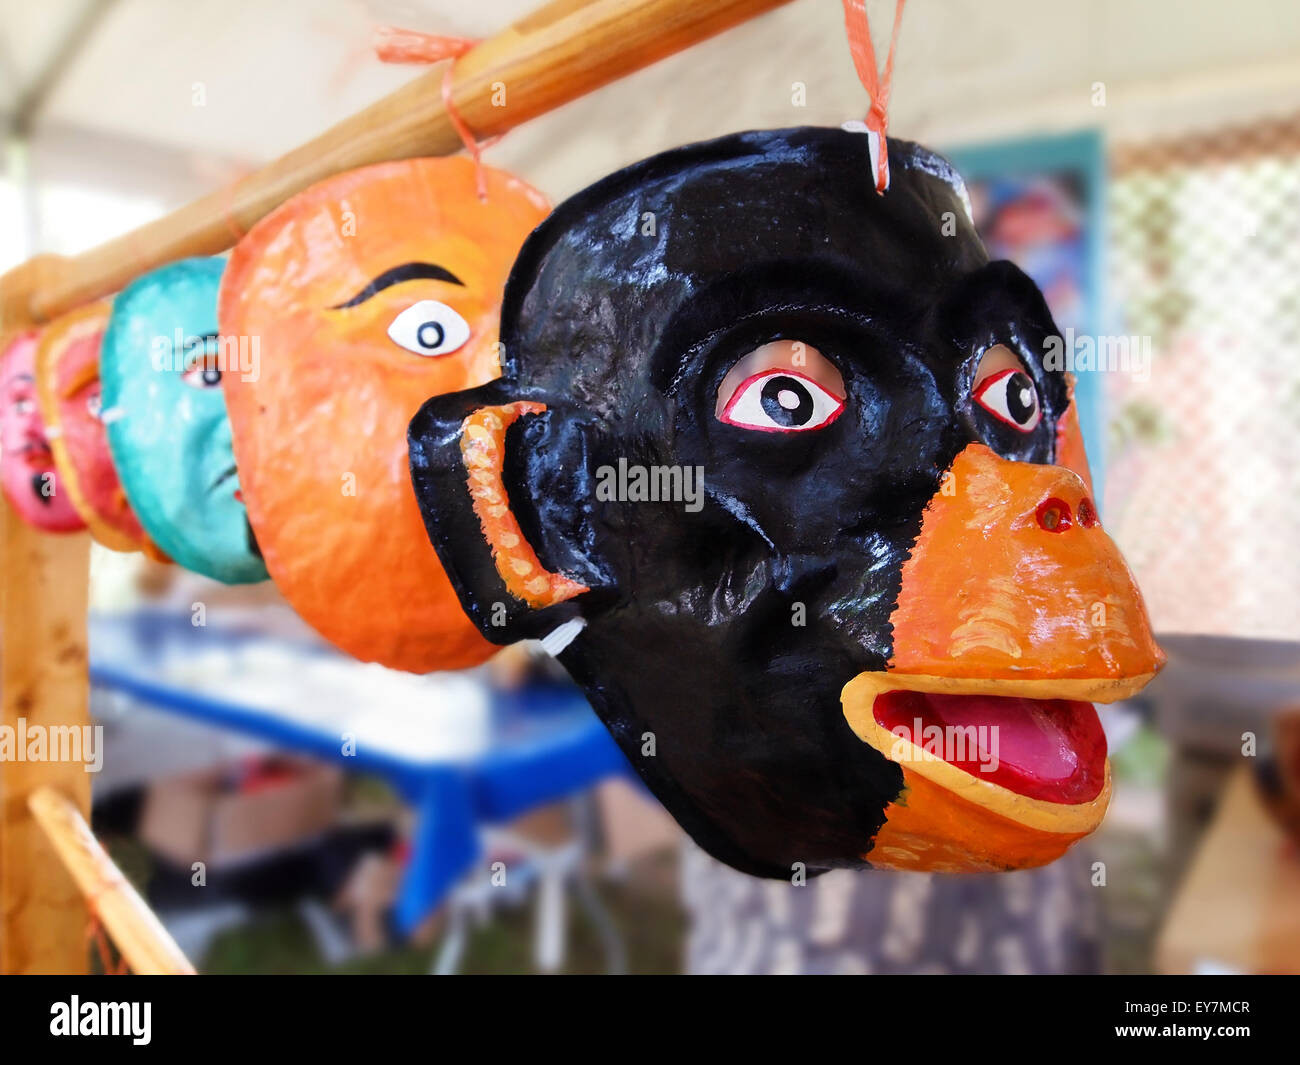 Una collezione di tre re giorno maschere, realizzata di pasta di farina, zucchero e colla, e dipinta a mano, sul display in un marketplace. Foto Stock